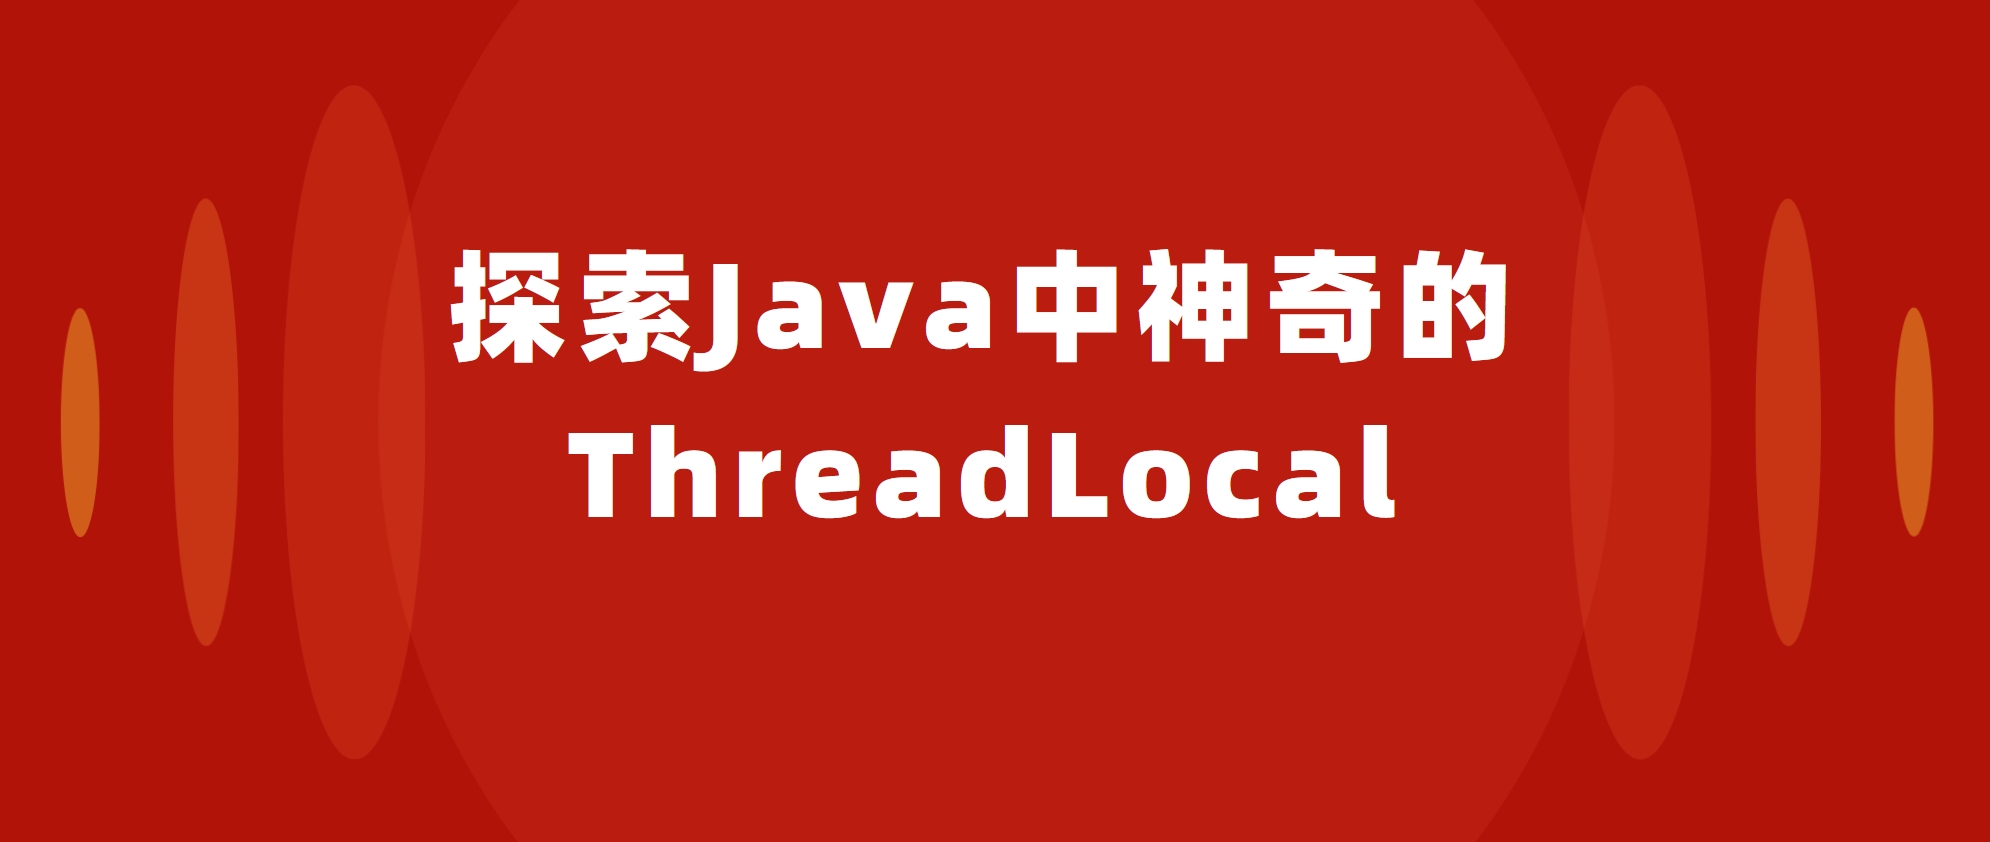 探索Java中神奇的ThreadLocal：为什么它是多线程编程的重要工具？